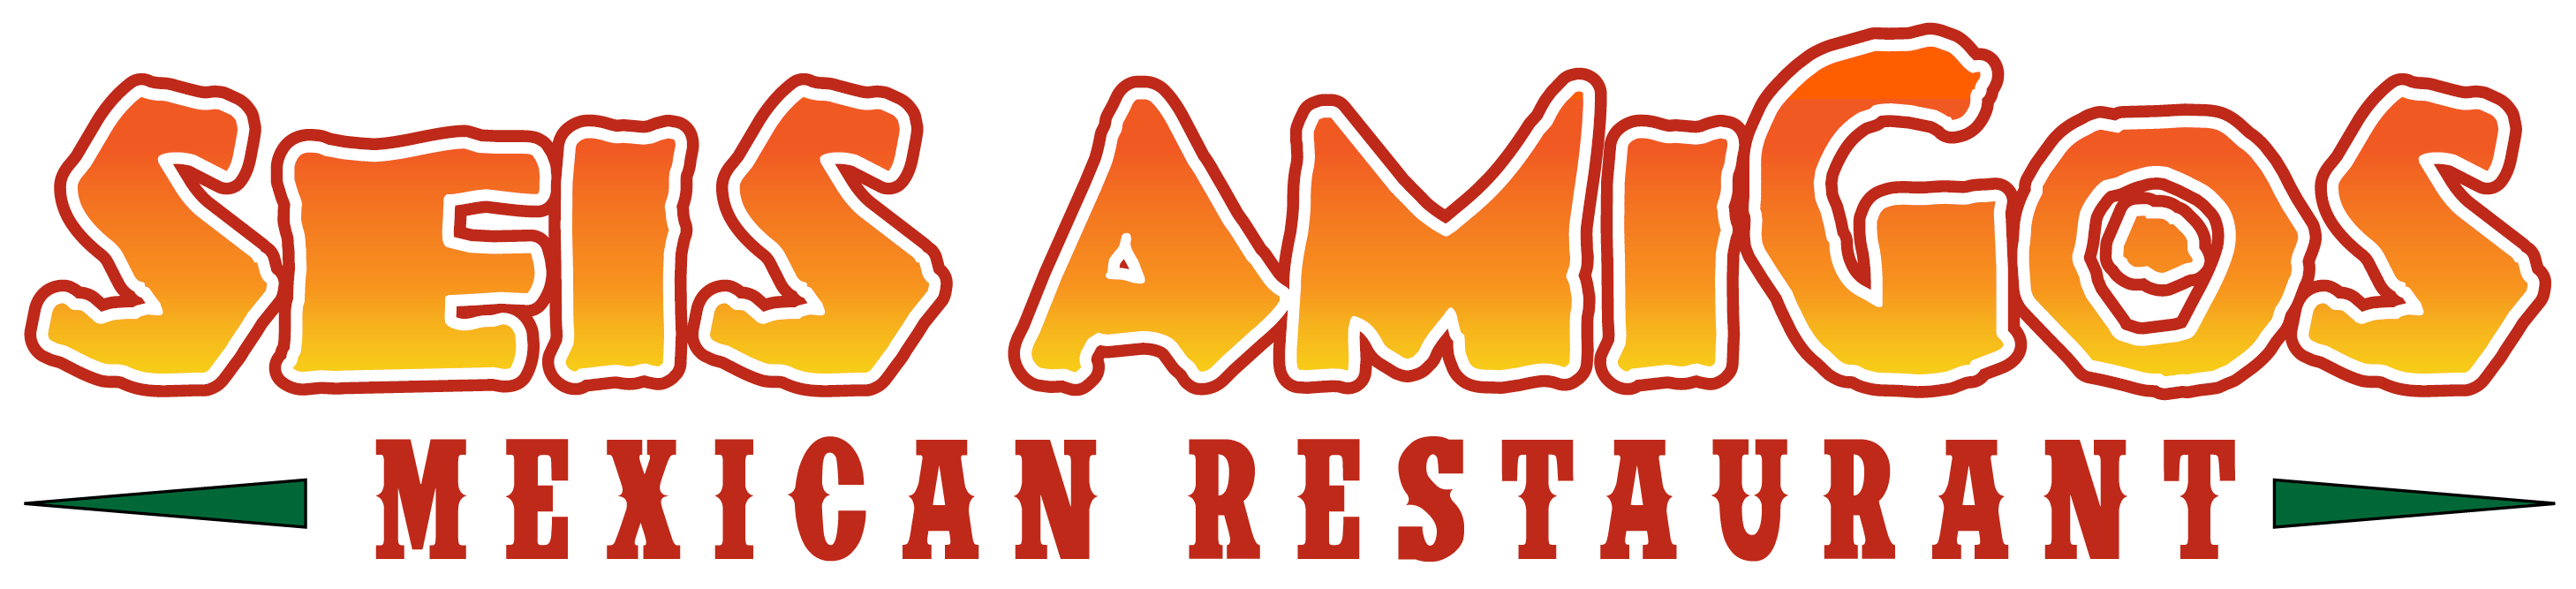 Seis Amigos Mexican Restaurant